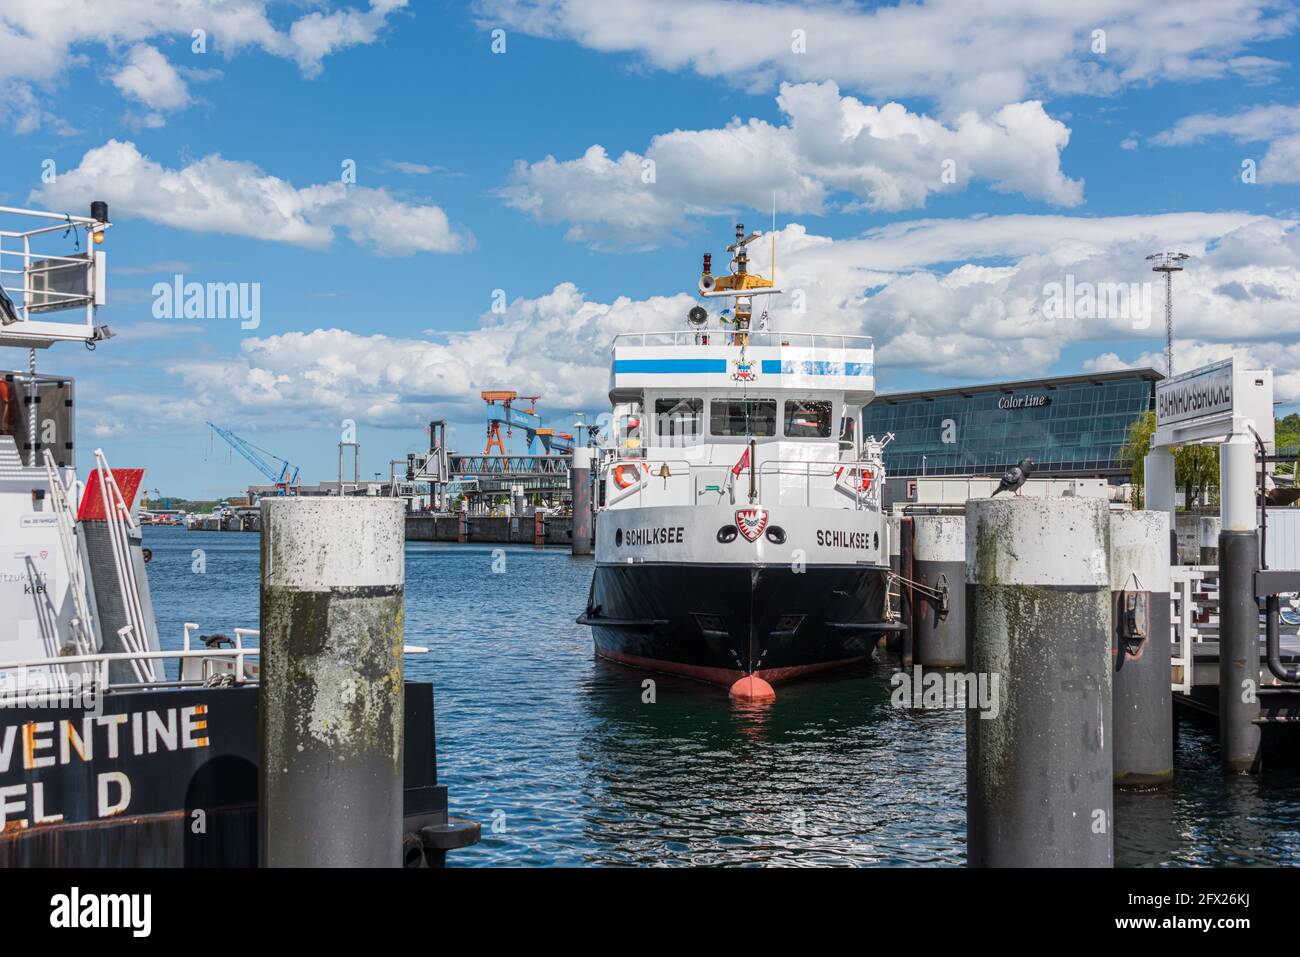 Die Schilksee, ein Schiff der Fördereederei, bringt Touristen und Einheimische an die verschiedenen Orte an der Kieler Förde. Hier am Bahnhofskai Stock Photo